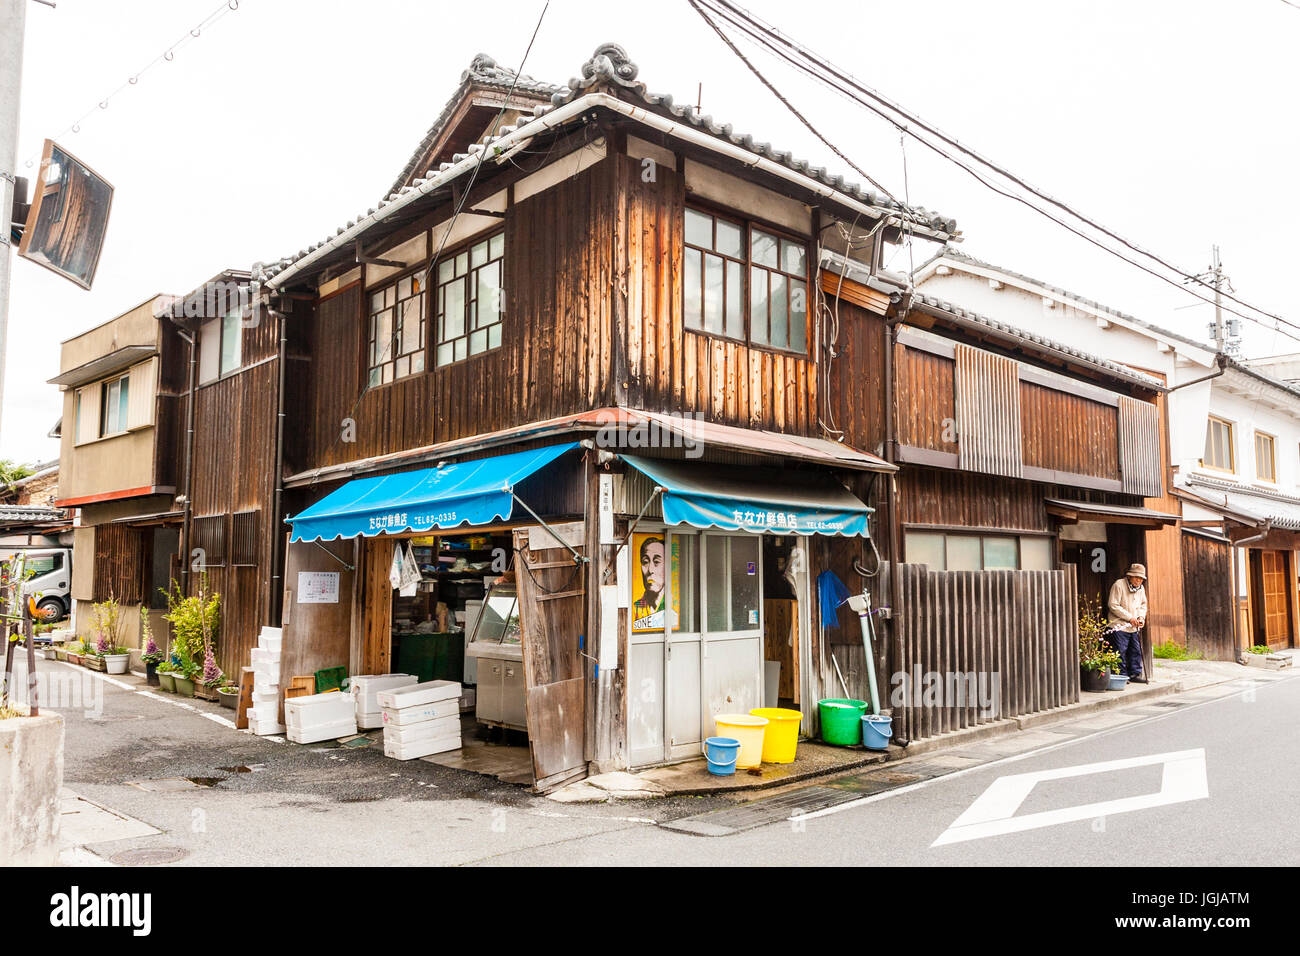 Architettura tradizionale stile in legno a due piani fish monger shop su un angolo di strada trasversale nella cittadina rurale di Tatsuno, Giappone. Foto Stock